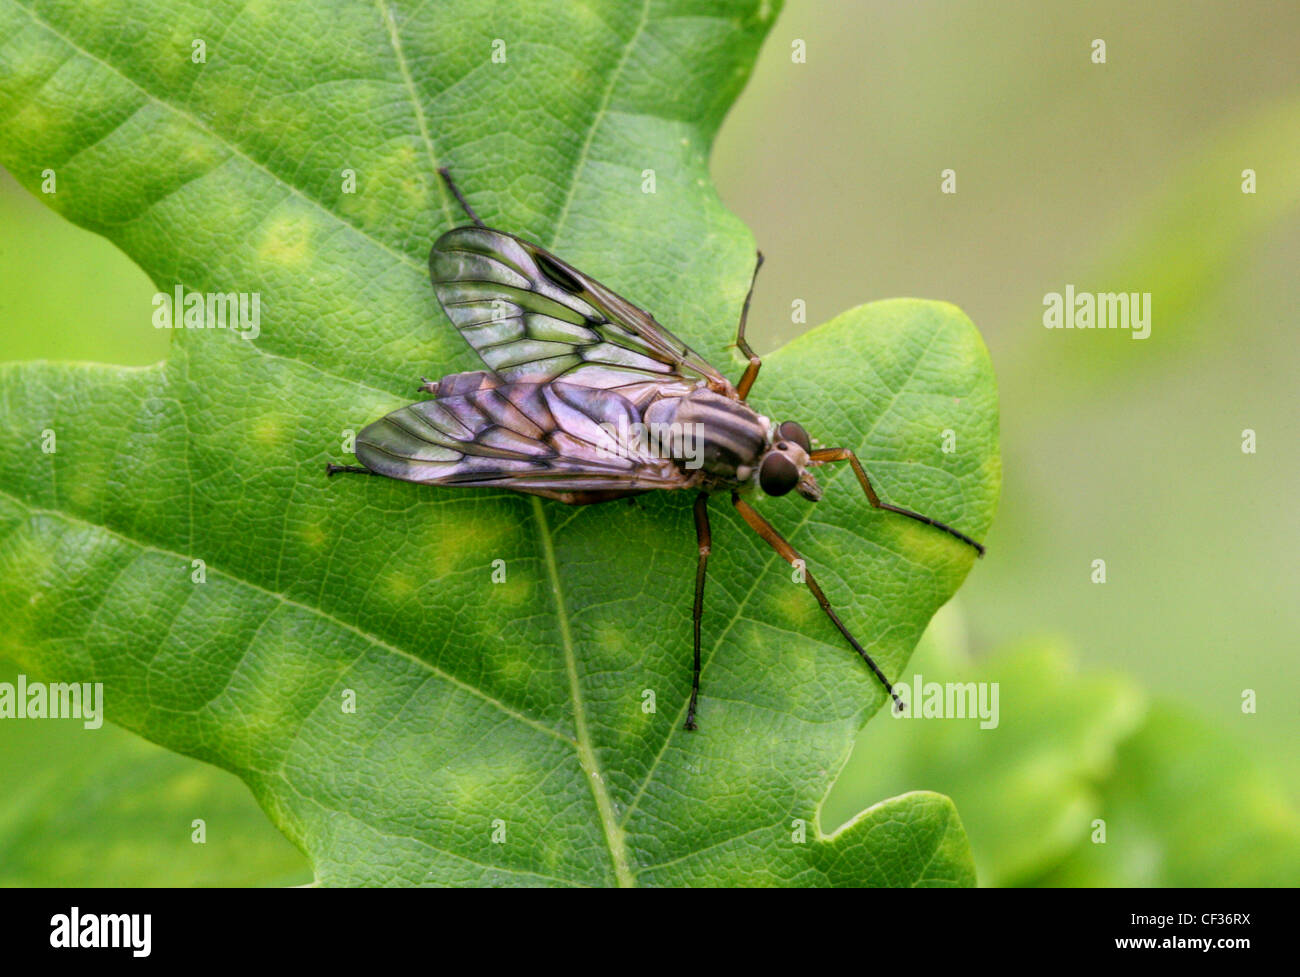 Downlooker Snipe fliegen, Rhagio Scolopaceus, Rhagionidae, Diptera. Weiblich. Gemeinsame britische Insekt. Stockfoto